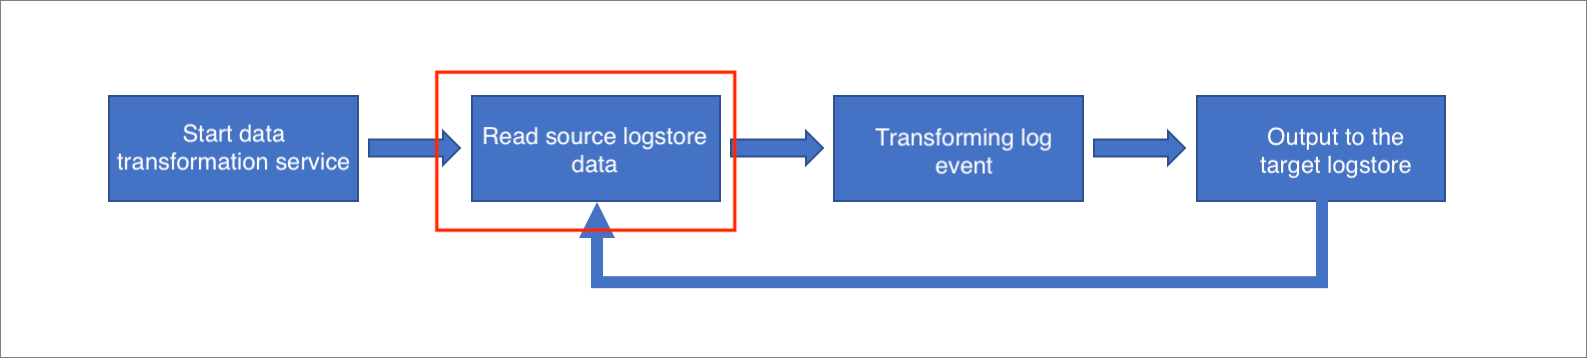 データ変換エンジンがソースLogstoreからデータを読み取るときに発生するエラーを修正するにはどうすればよいですか?